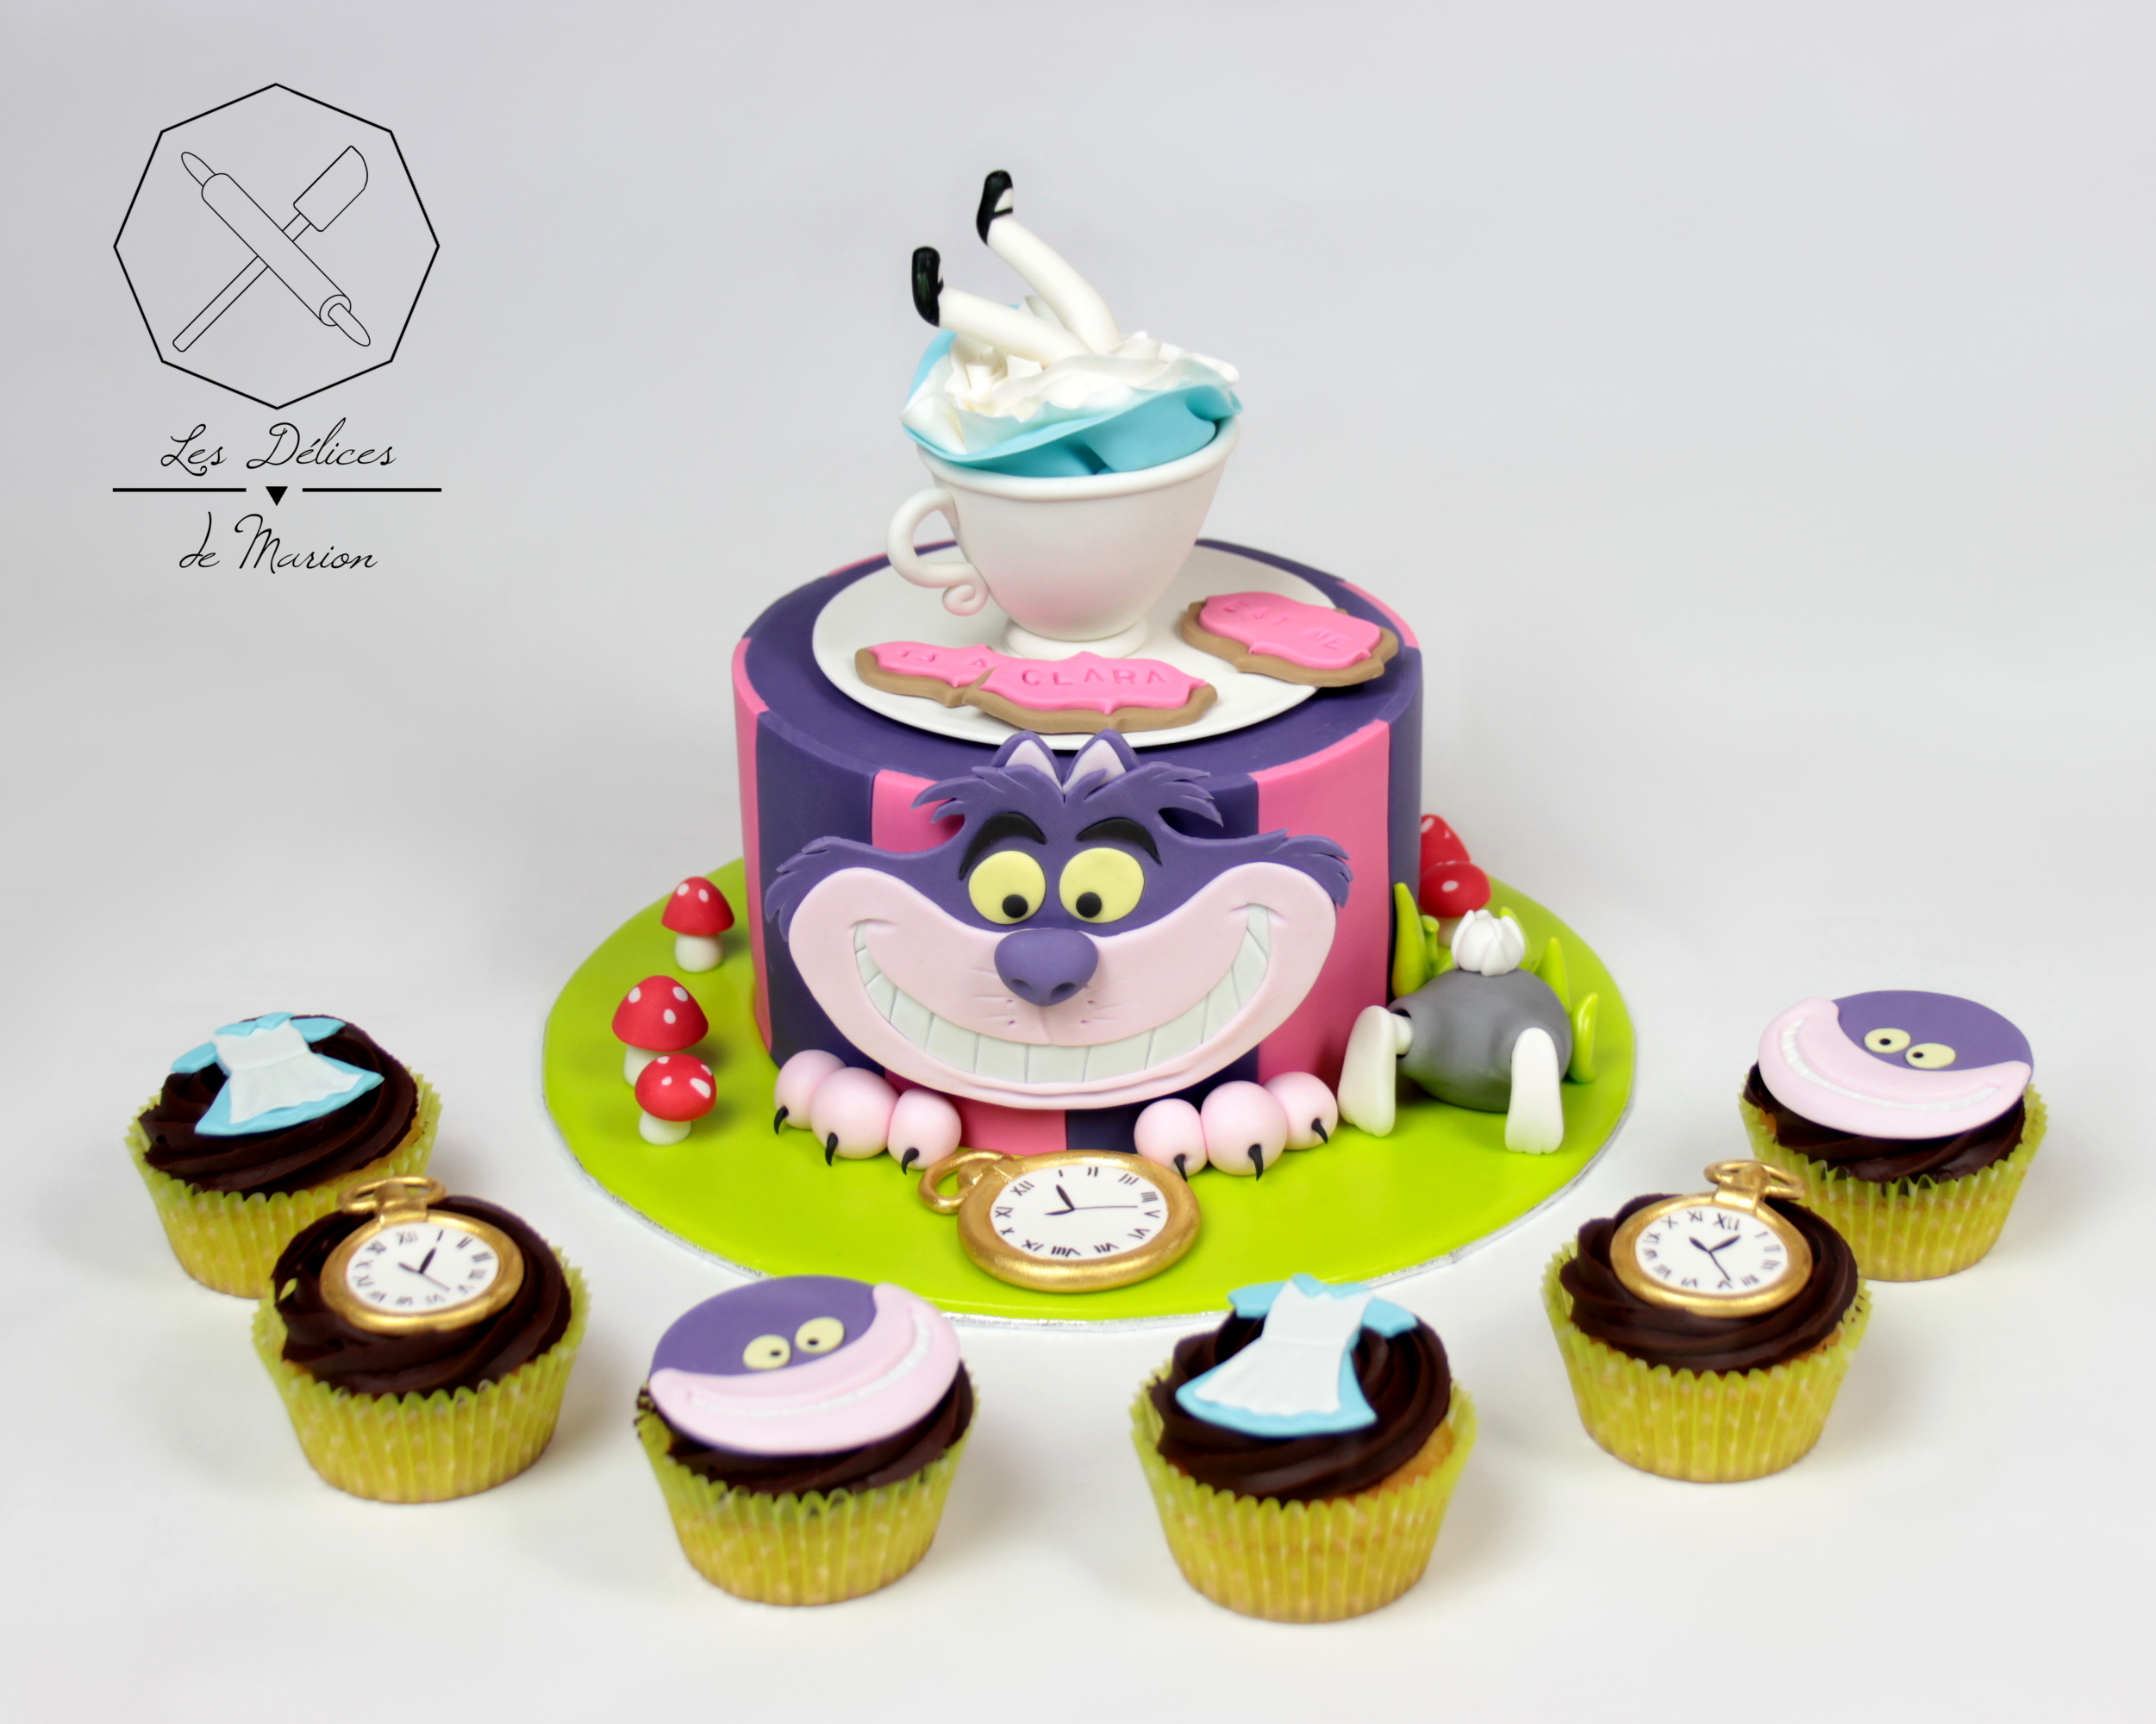 gateau_alice_au_pays_des_merveilles_lapin_chat_montre_cupcakes_assortis_cake-design_delices-marion